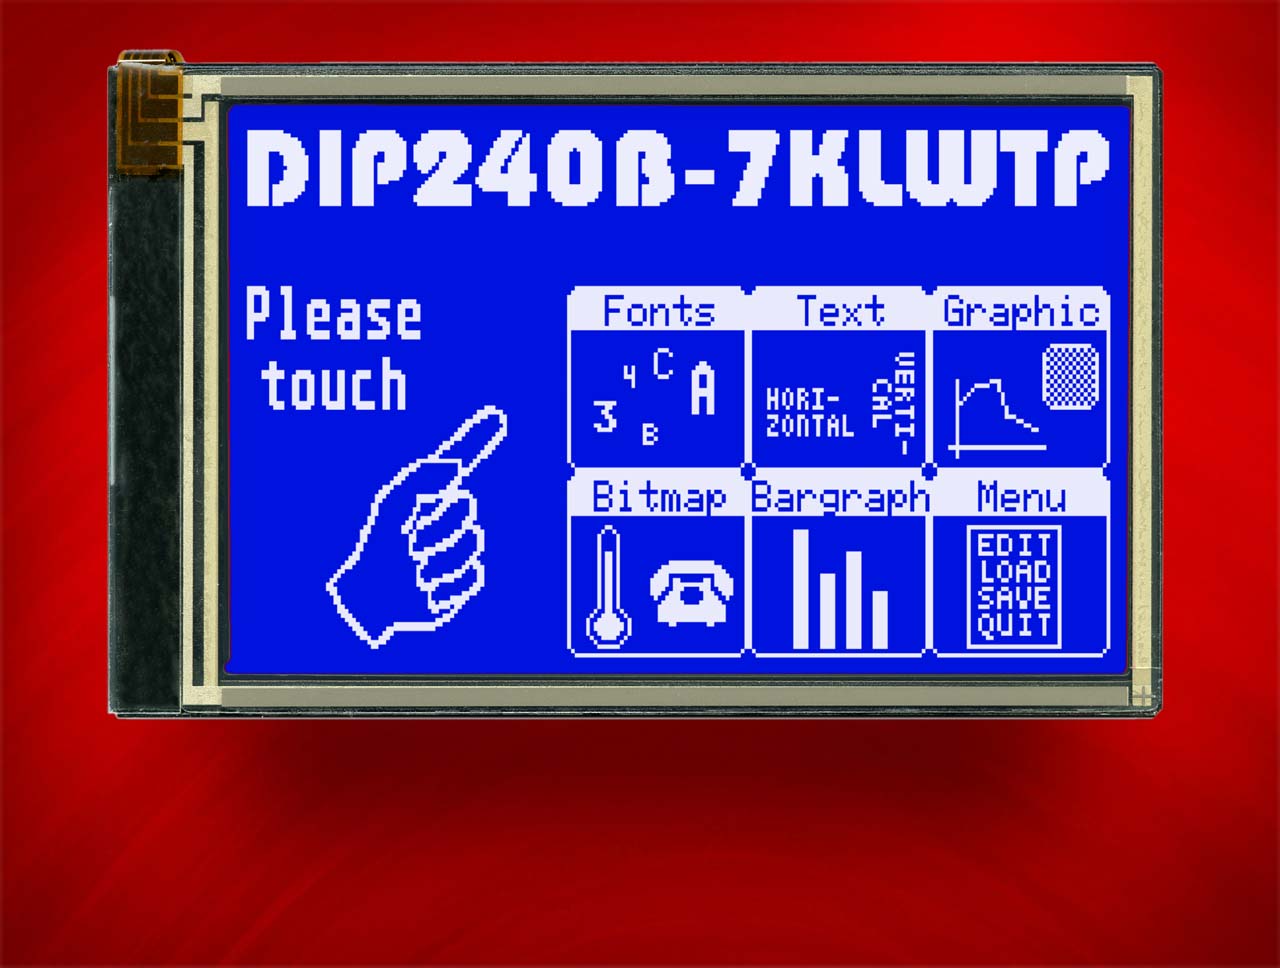 DIP240B-7LWTP